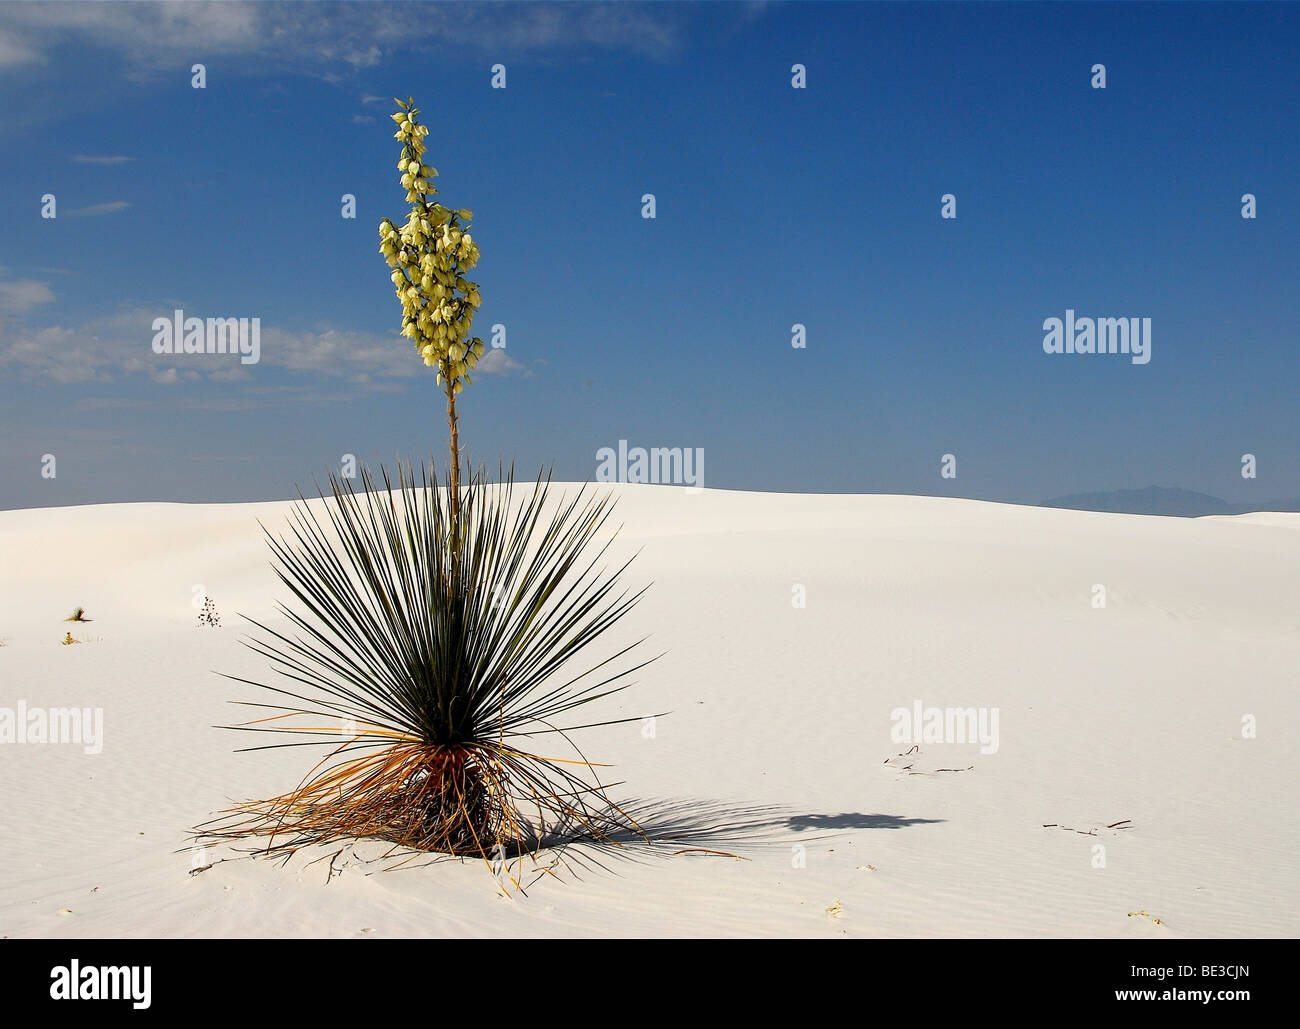 Savon fleurs de Yucca Yucca elata (arbre) dans le Parc National de White Sands, au Nouveau Mexique, USA, Amérique du Nord Banque D'Images